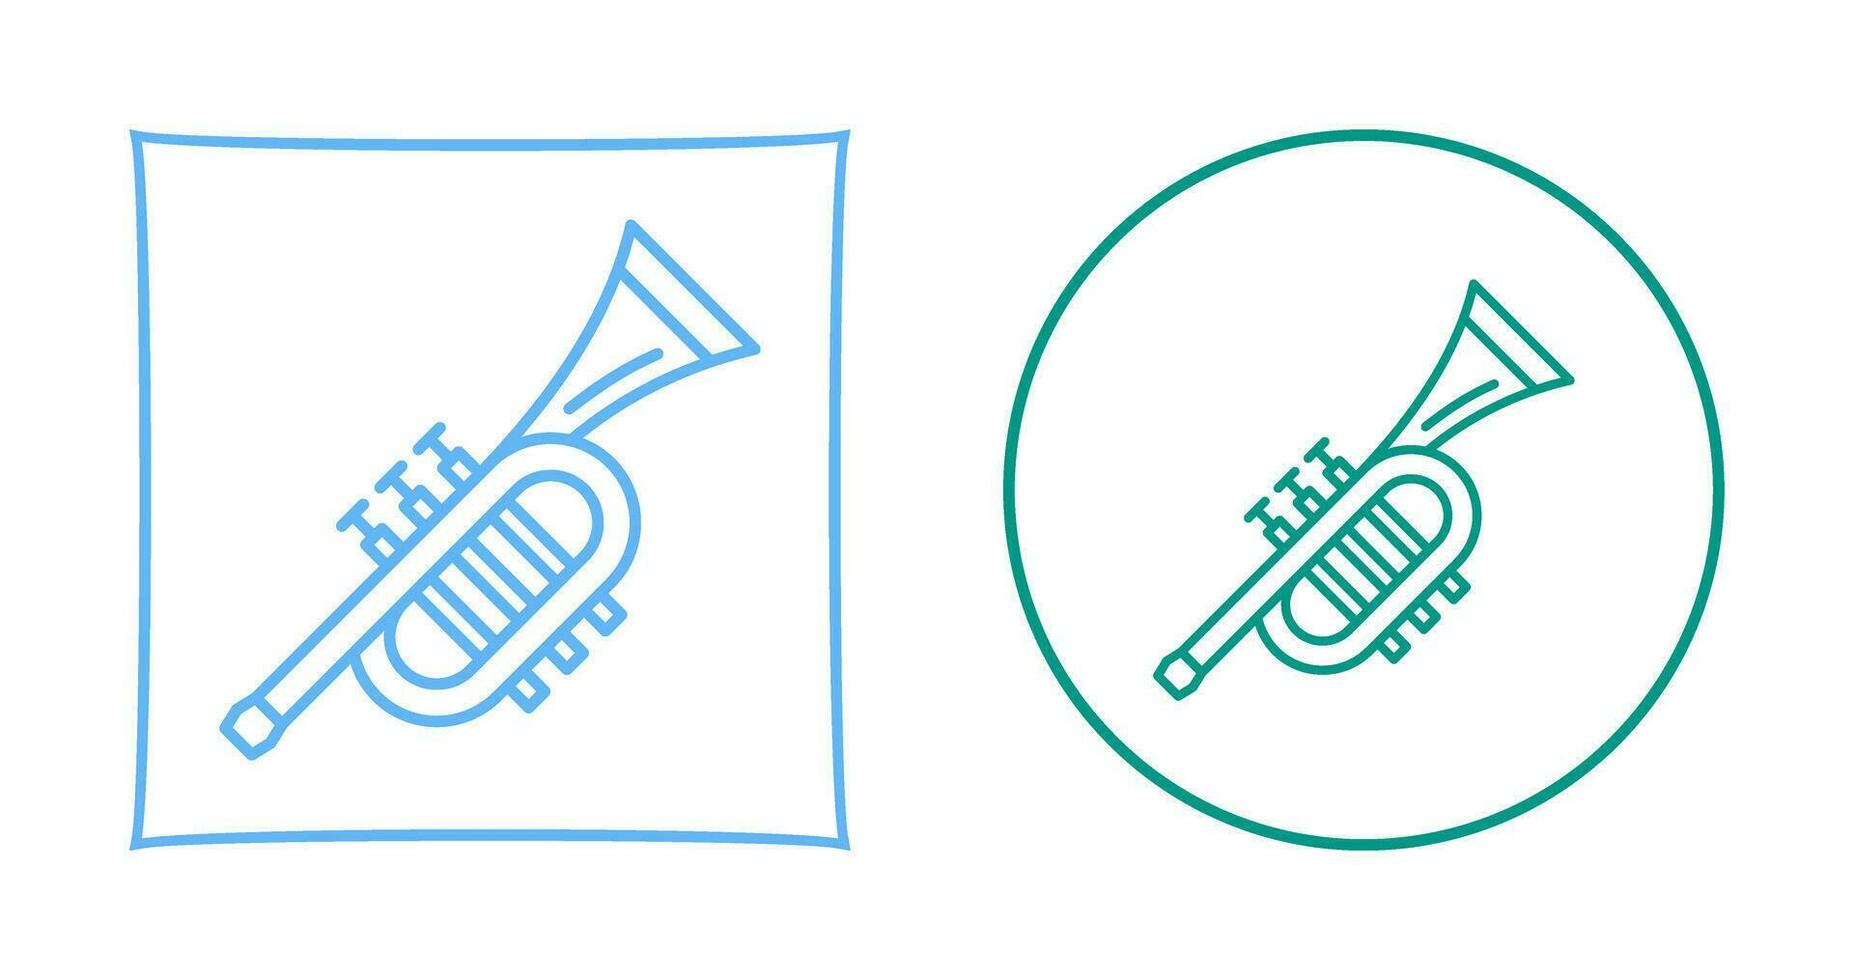 Trumpet Vector Icon